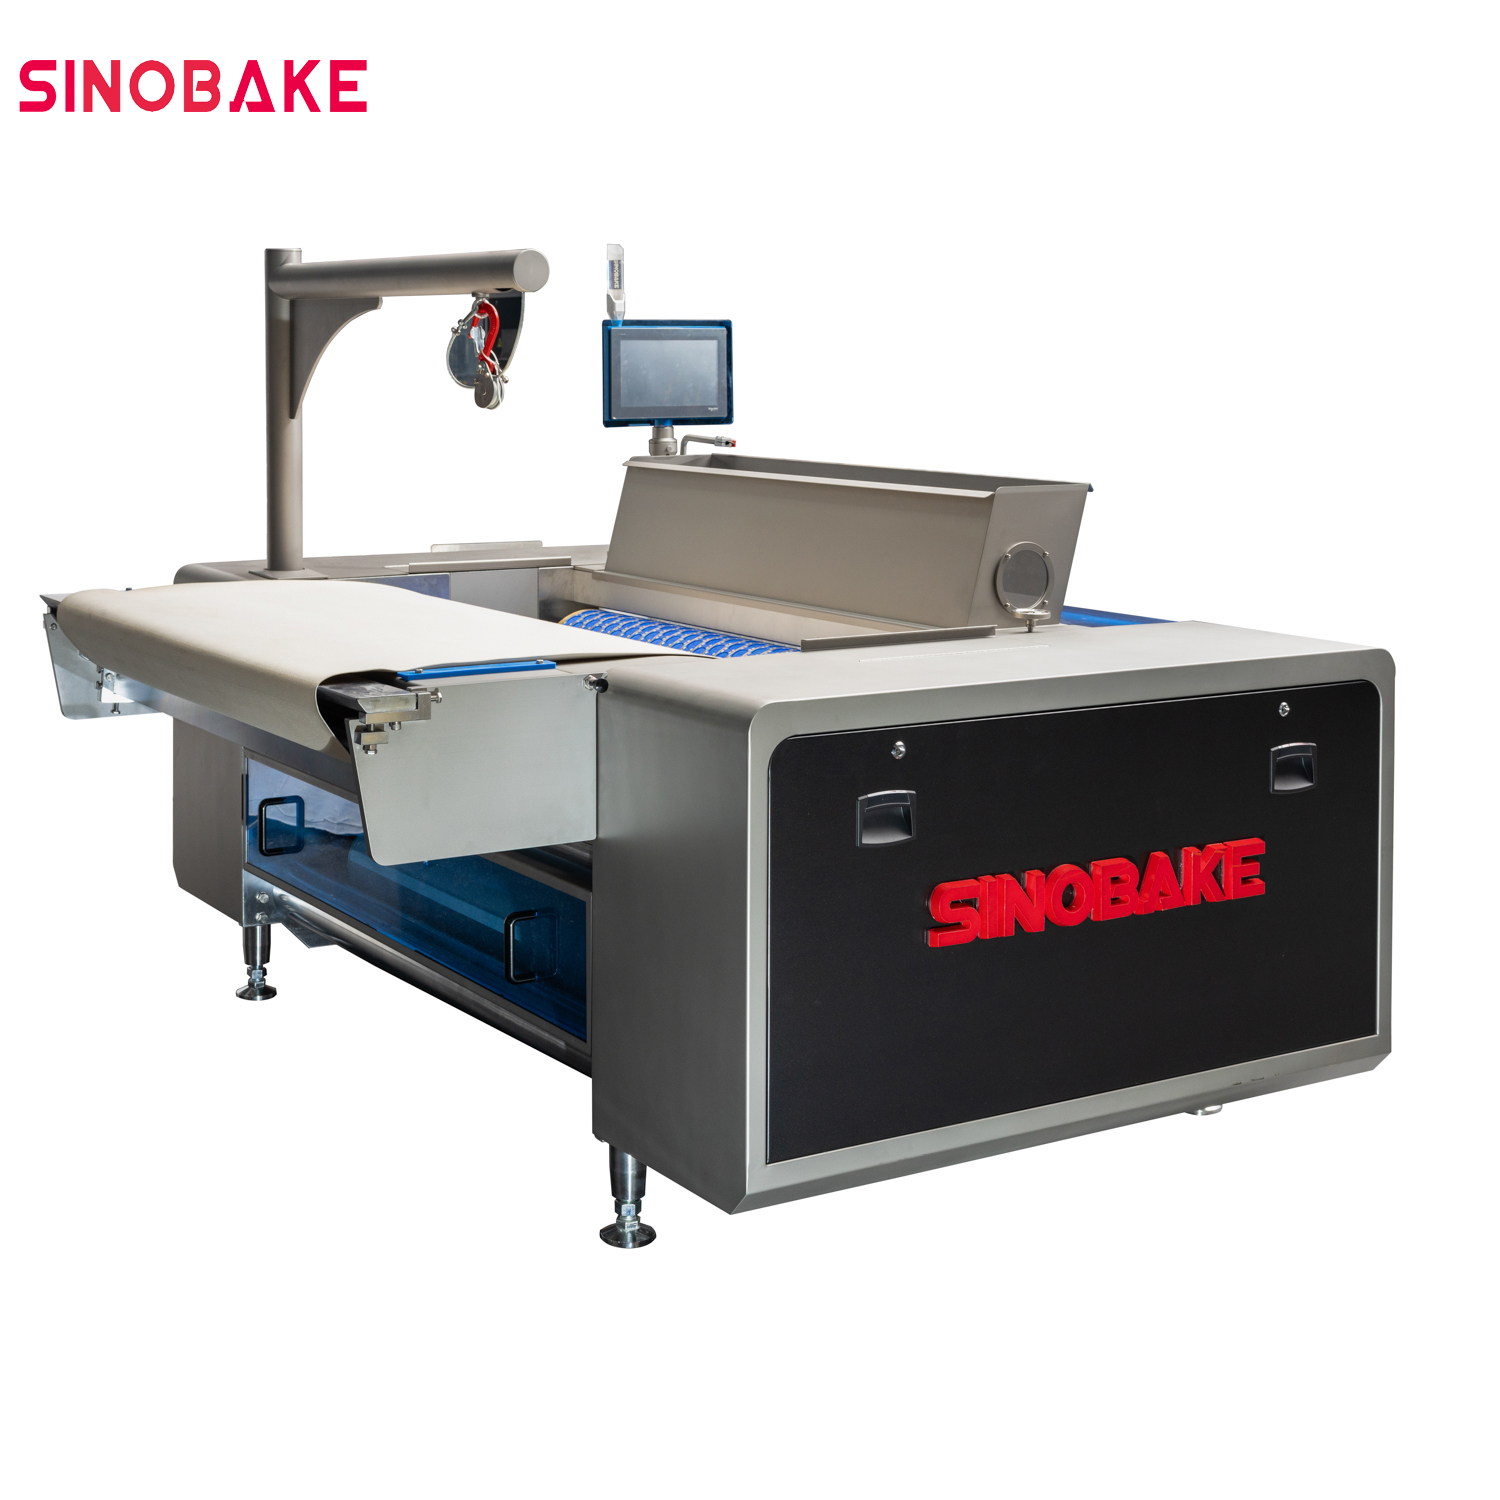 Sinobake hohe Kapazität weiche und harte Kekse -Produktionslinie 